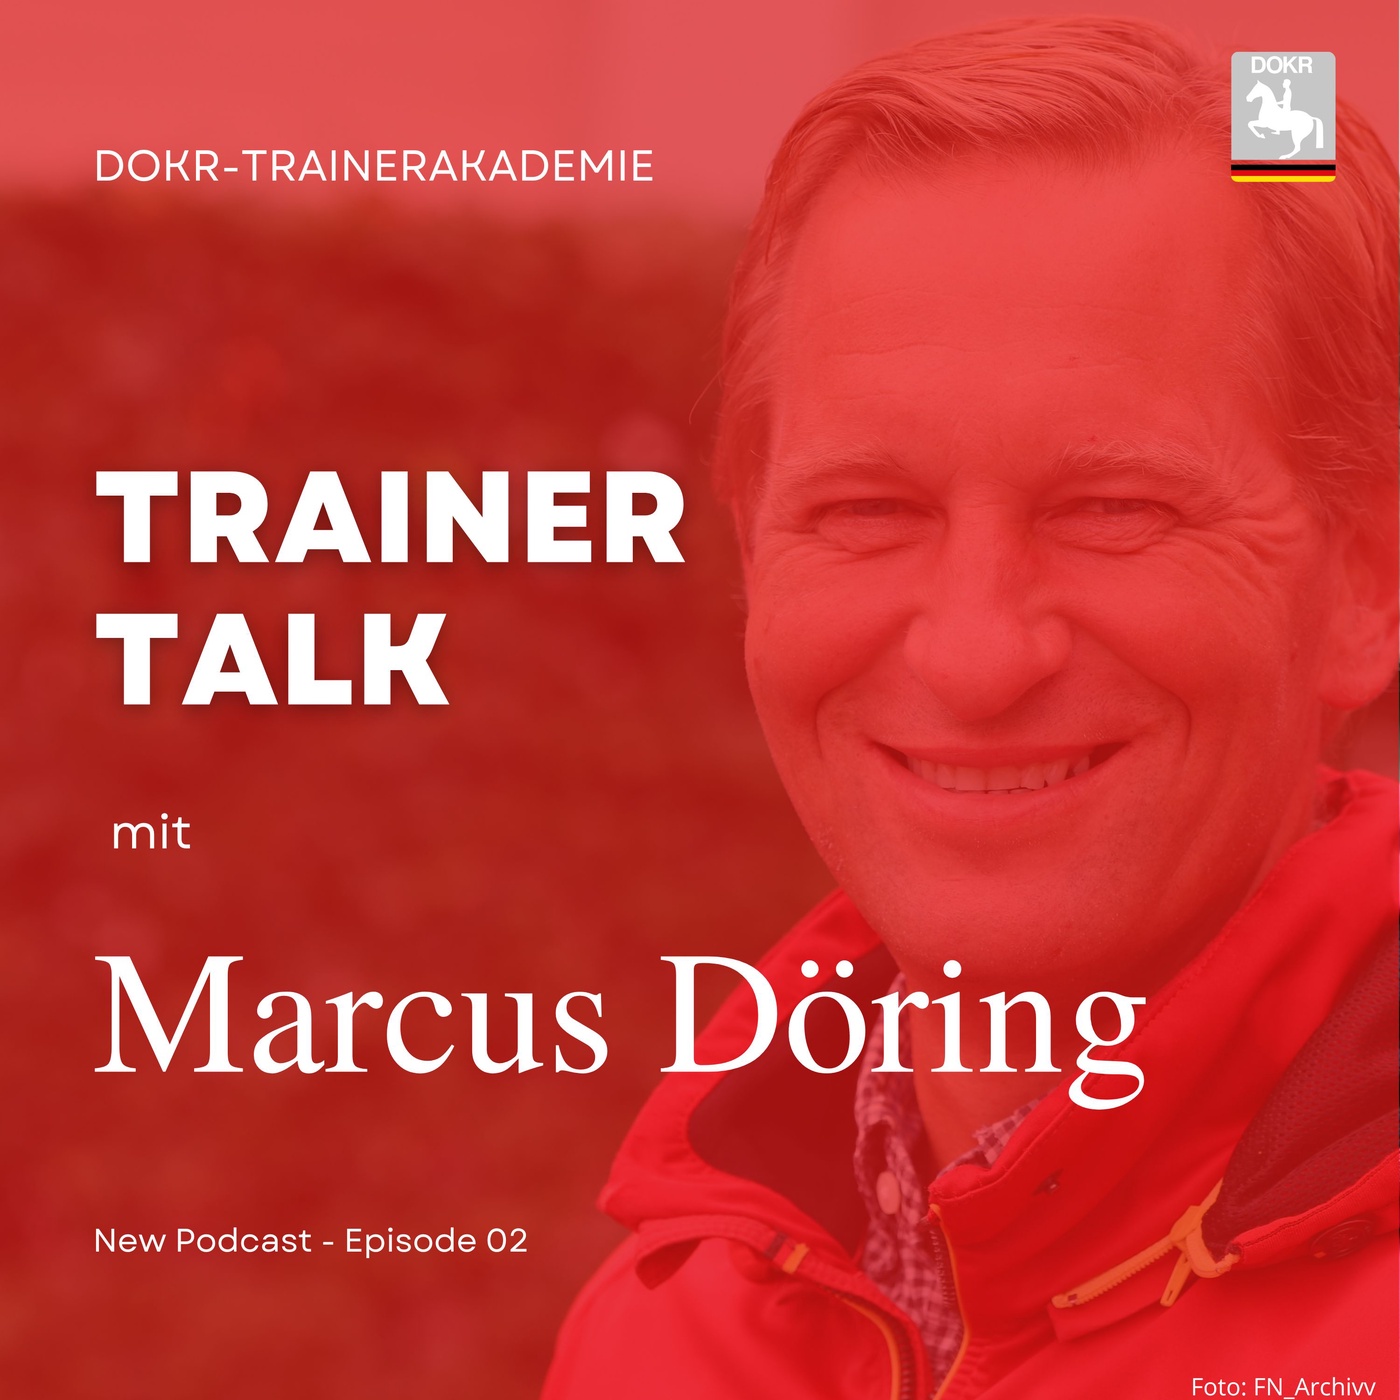 Co-Bundestrainer Marcus Döring im Trainer-Talk der DOKR-Trainerakademie